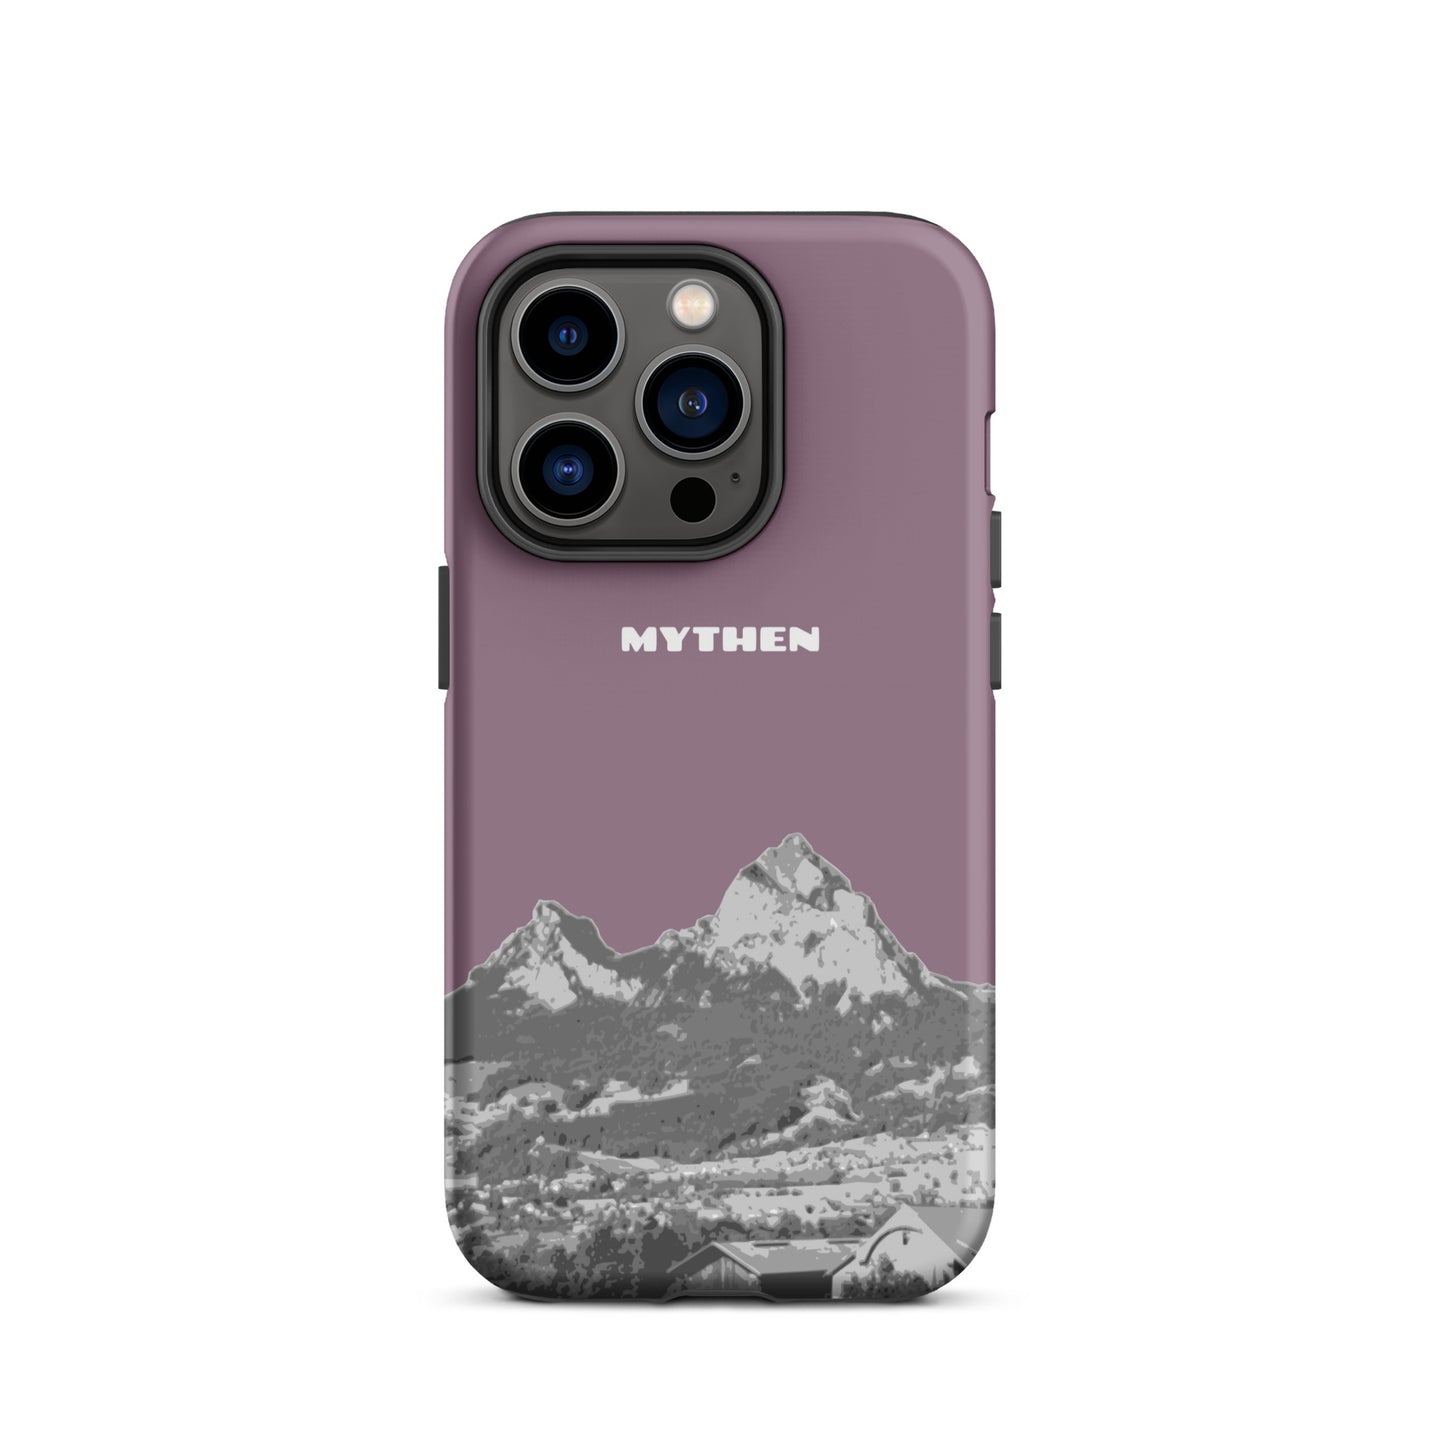 Hülle für das iPhone 14 Pro von Apple in der Farbe Pastellviolett, die den Grossen Mythen und den Kleinen Mythen bei Schwyz zeigt. 